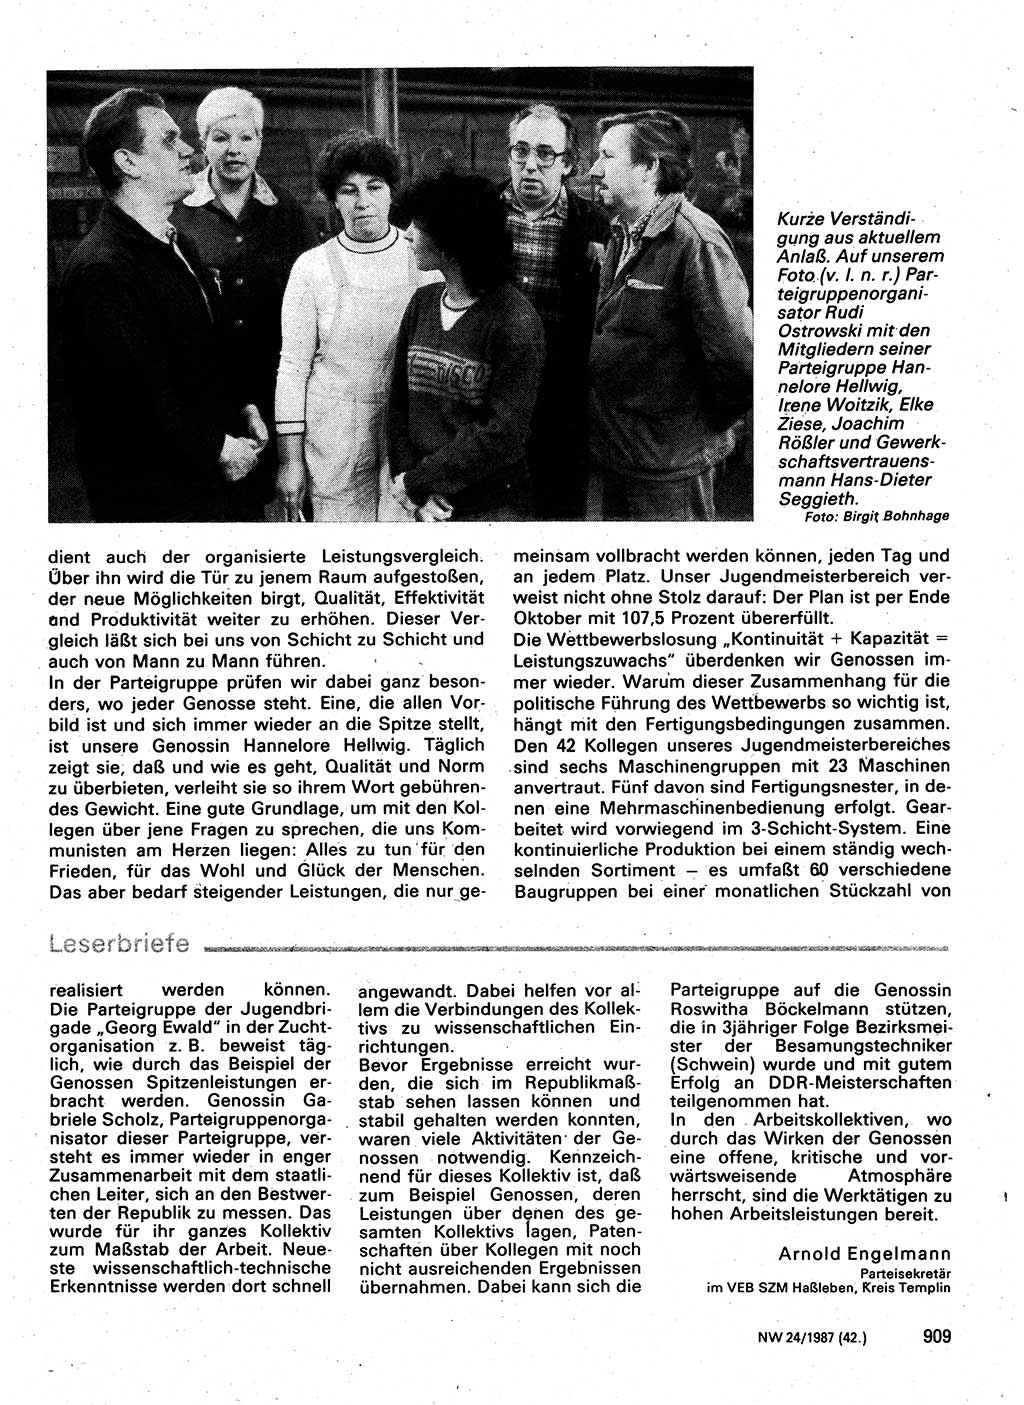 Neuer Weg (NW), Organ des Zentralkomitees (ZK) der SED (Sozialistische Einheitspartei Deutschlands) für Fragen des Parteilebens, 42. Jahrgang [Deutsche Demokratische Republik (DDR)] 1987, Seite 909 (NW ZK SED DDR 1987, S. 909)